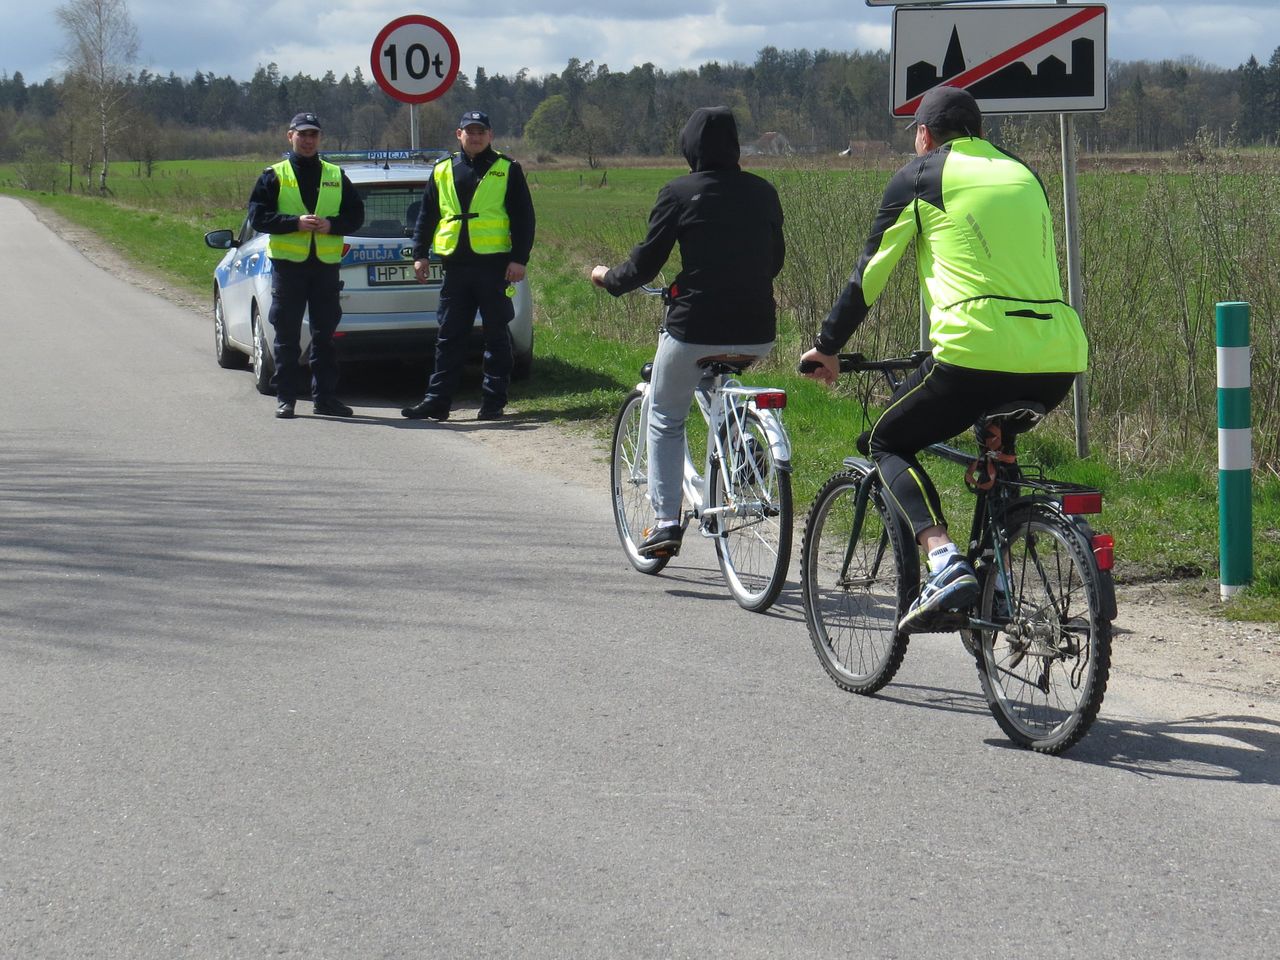 Wiele osób w Polsce również chciałoby obowiązkowych tablic rejestracyjnych na rowerach. Na razie na dwóch kółkach najłatwiej otrzymać mandat za brak maseczki